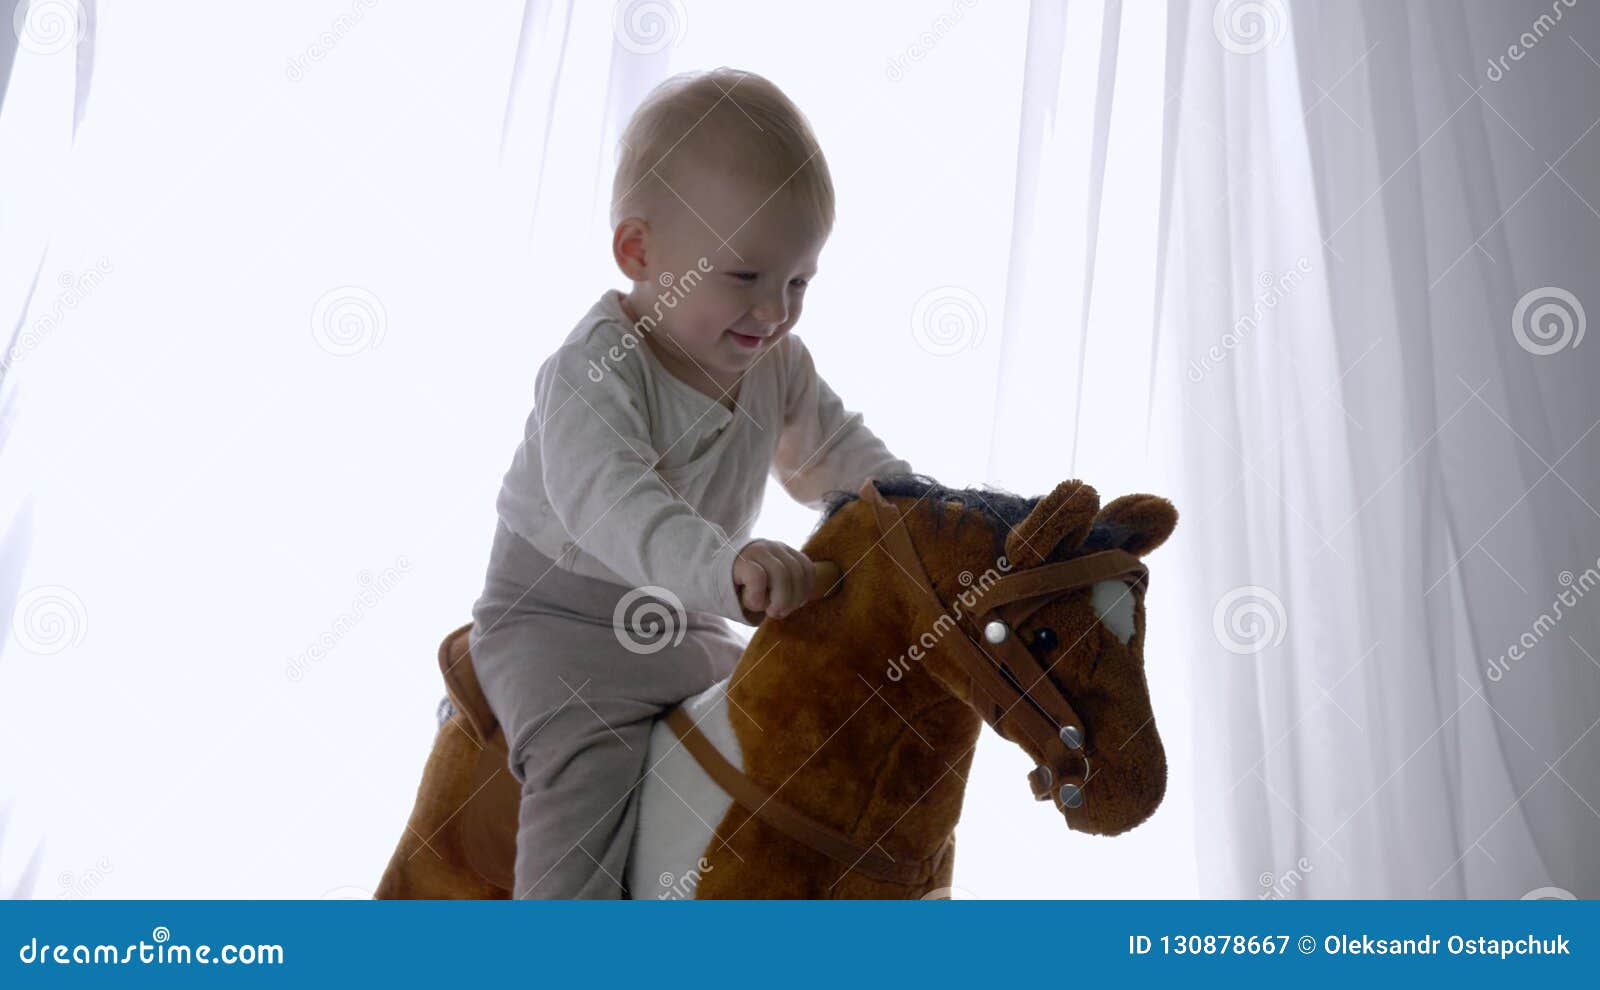 Cavalos de brinquedos pula pula para bebe